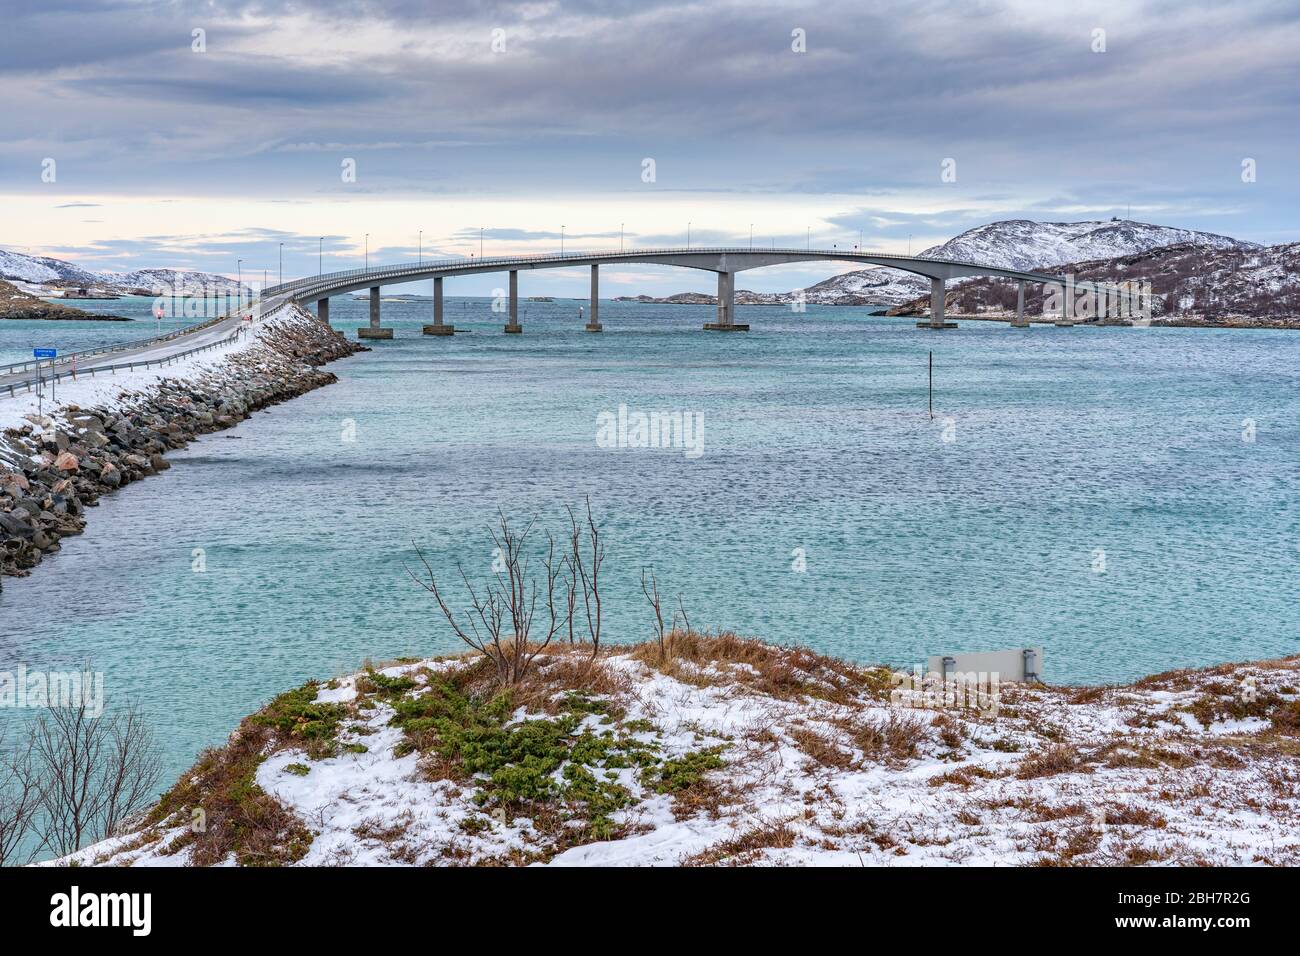 Fjord bridge in the idyllic winter landscape on Sommarøy Archipelago in northern Norway, near Tromsoe Stock Photo